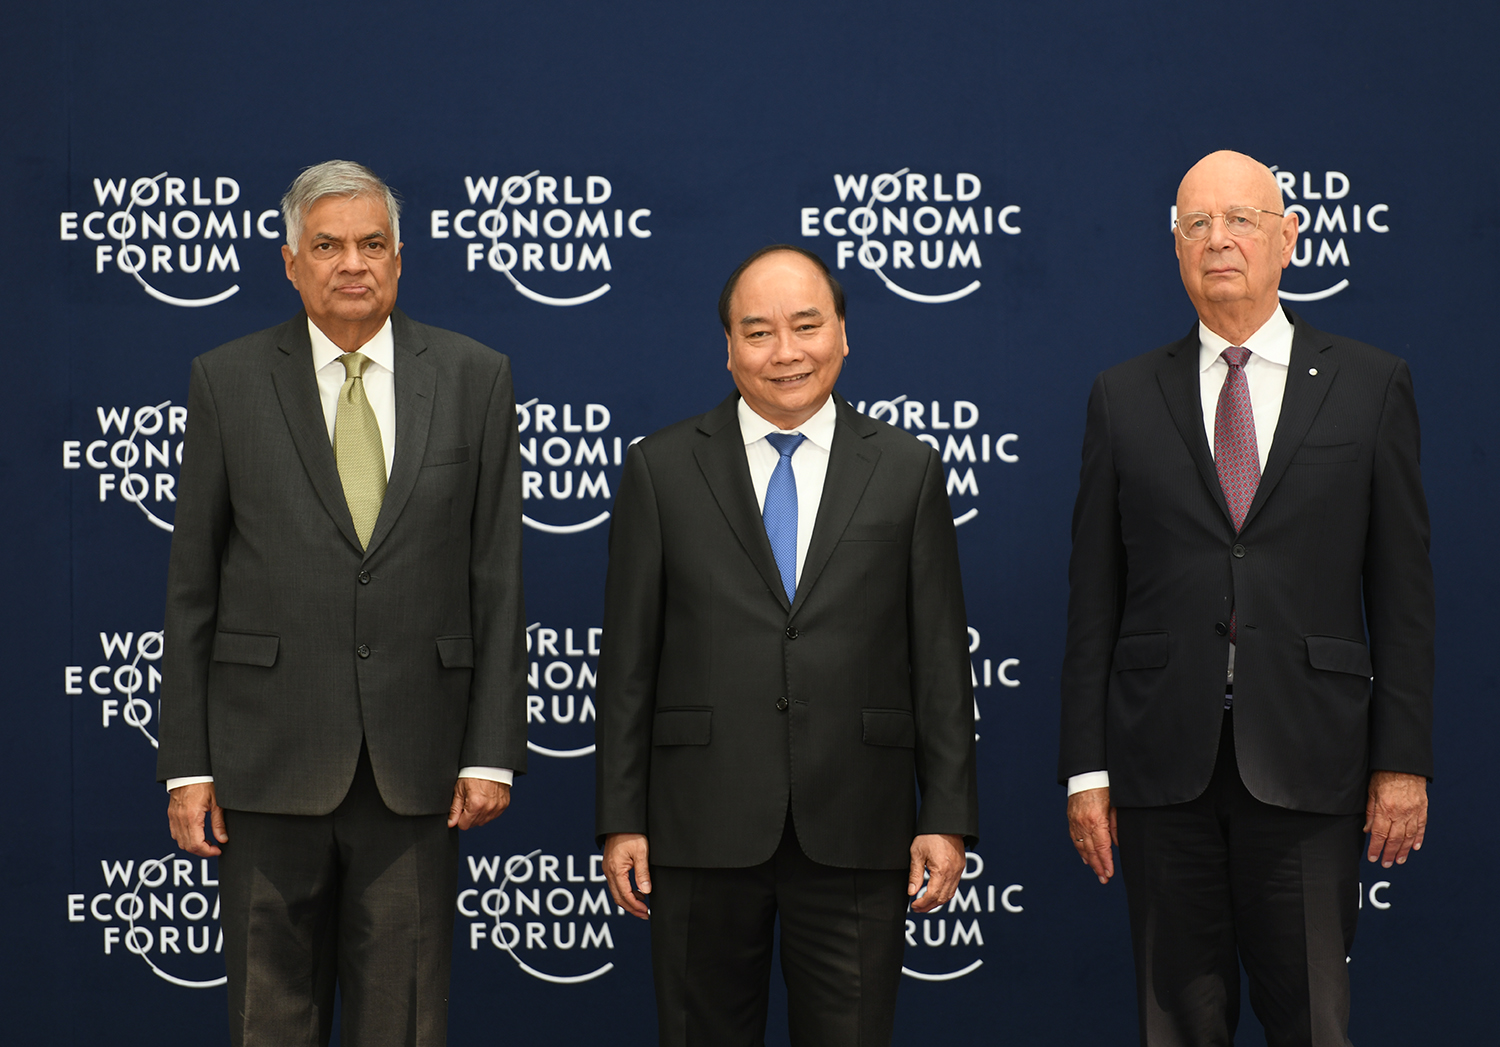 Thủ tướng Nguyễn Xuân Phúc và Chủ tịch WEF Klaus Schwab đón Thủ tướng Sri Lanka Ranil Wickremesinghe. Ảnh: VGP